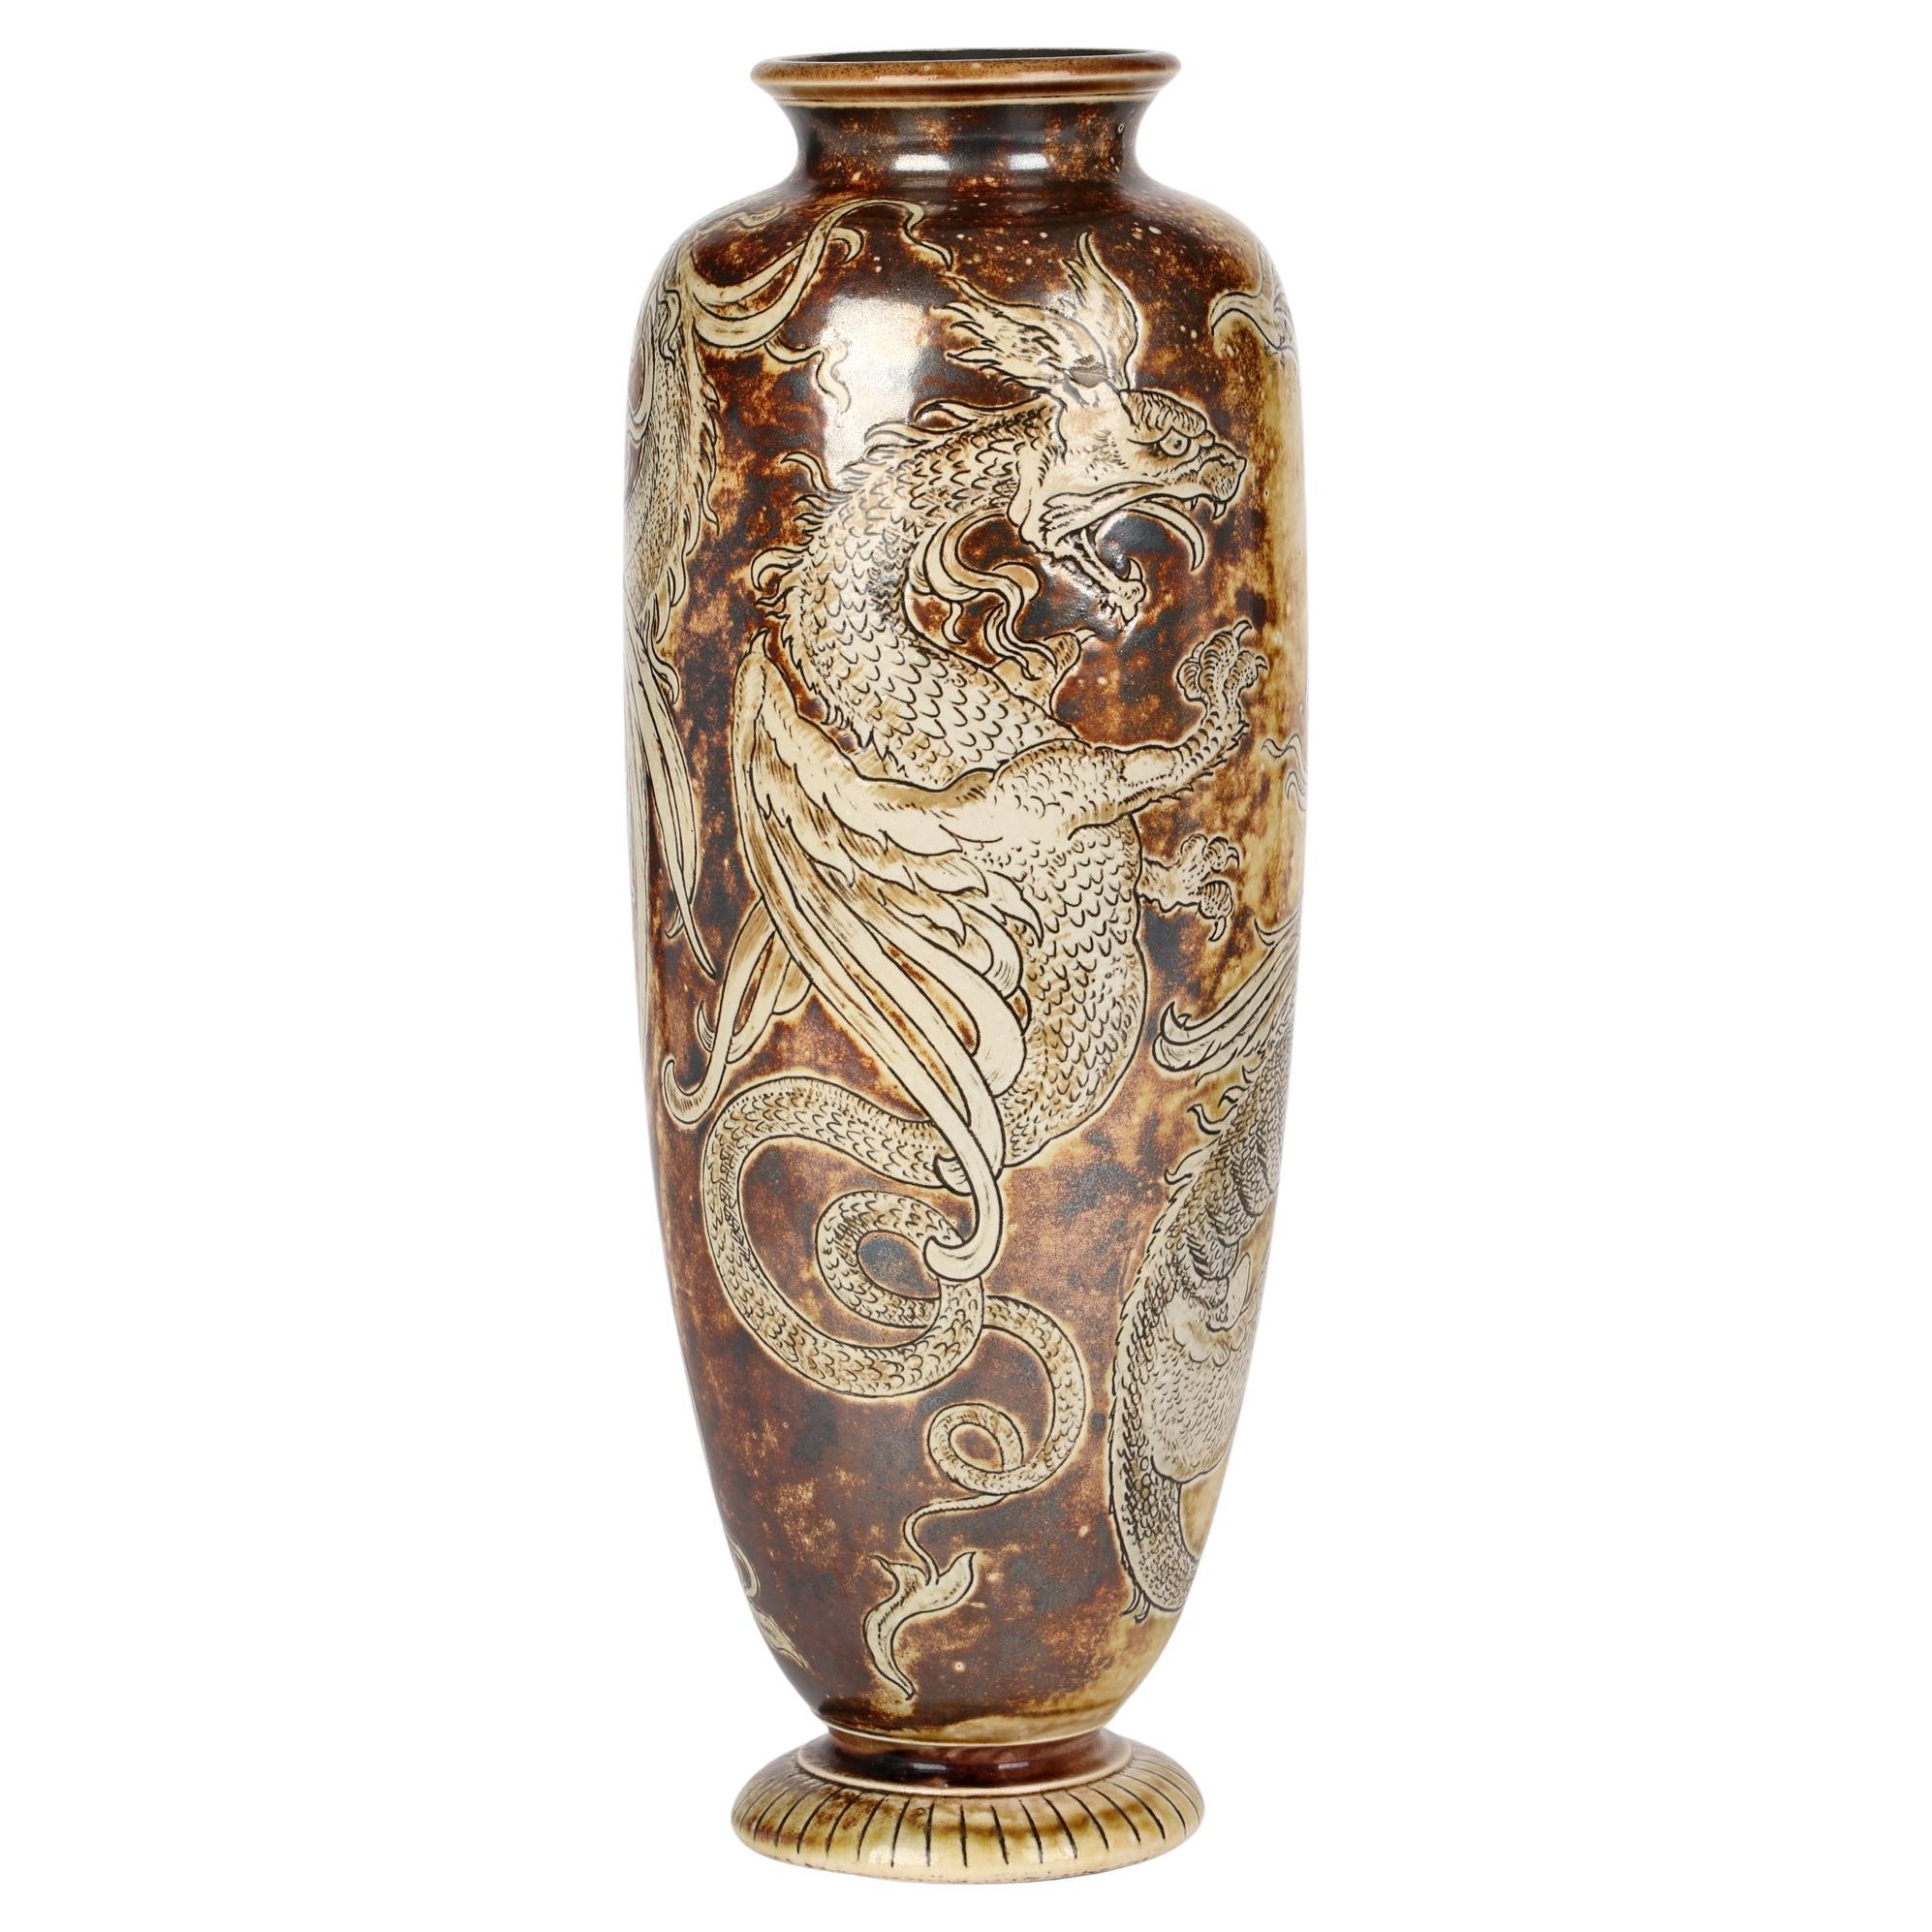 Robert Wallace Martin für Martin Brothers Steingut Vase mit flüchtigen Drachen, 1896